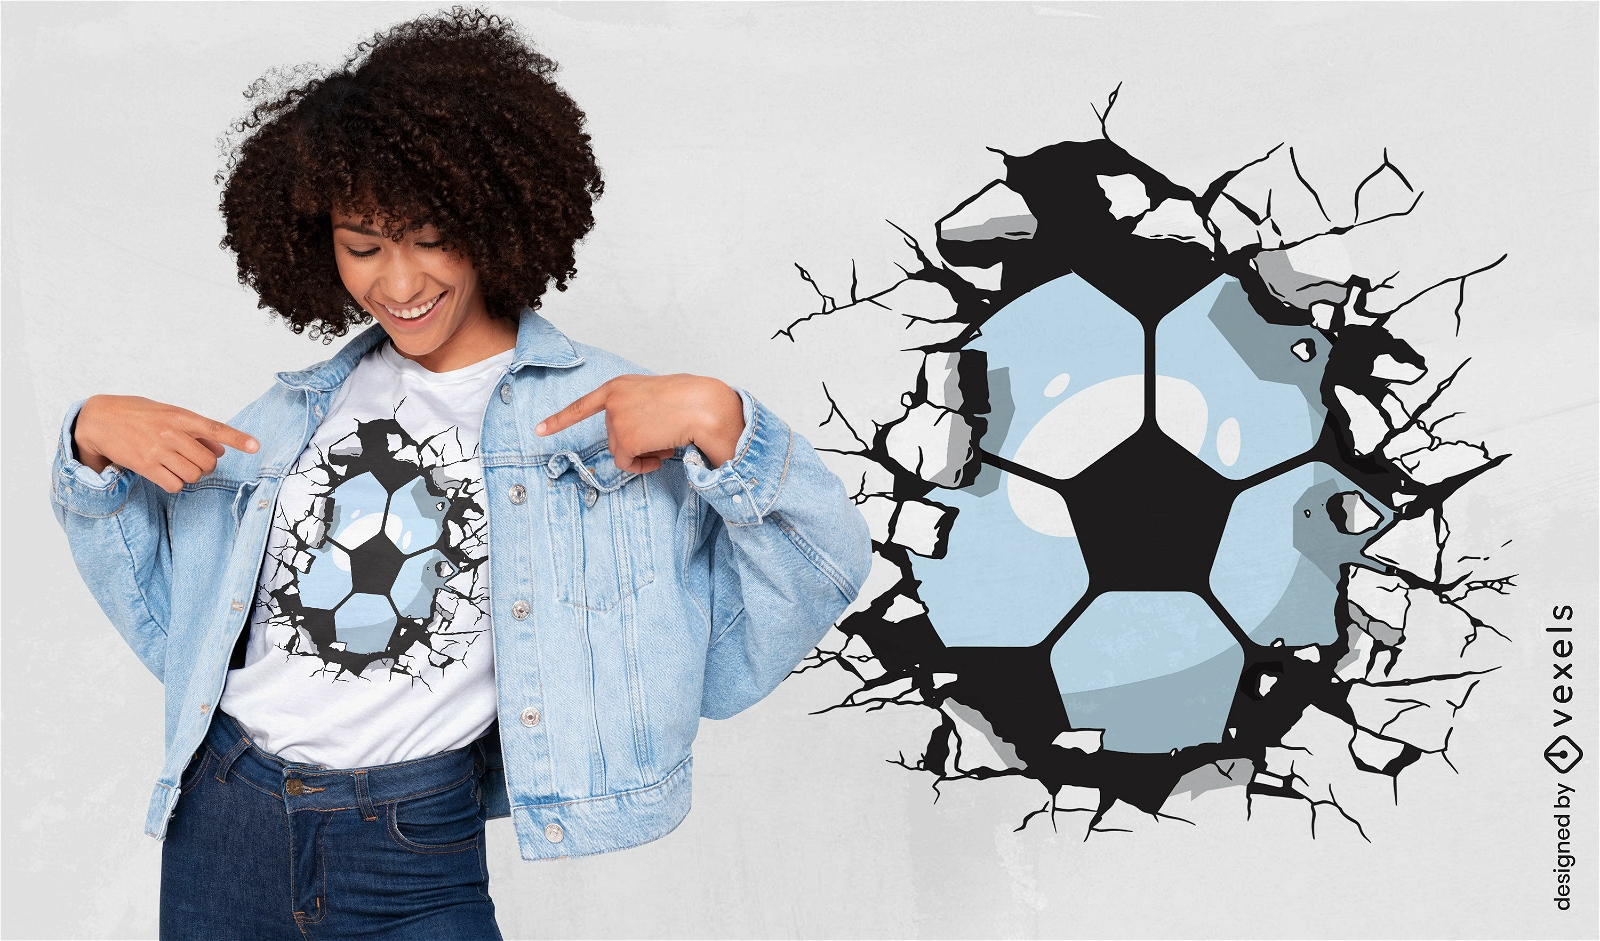 Soccer ball breaking wall t-shirt design